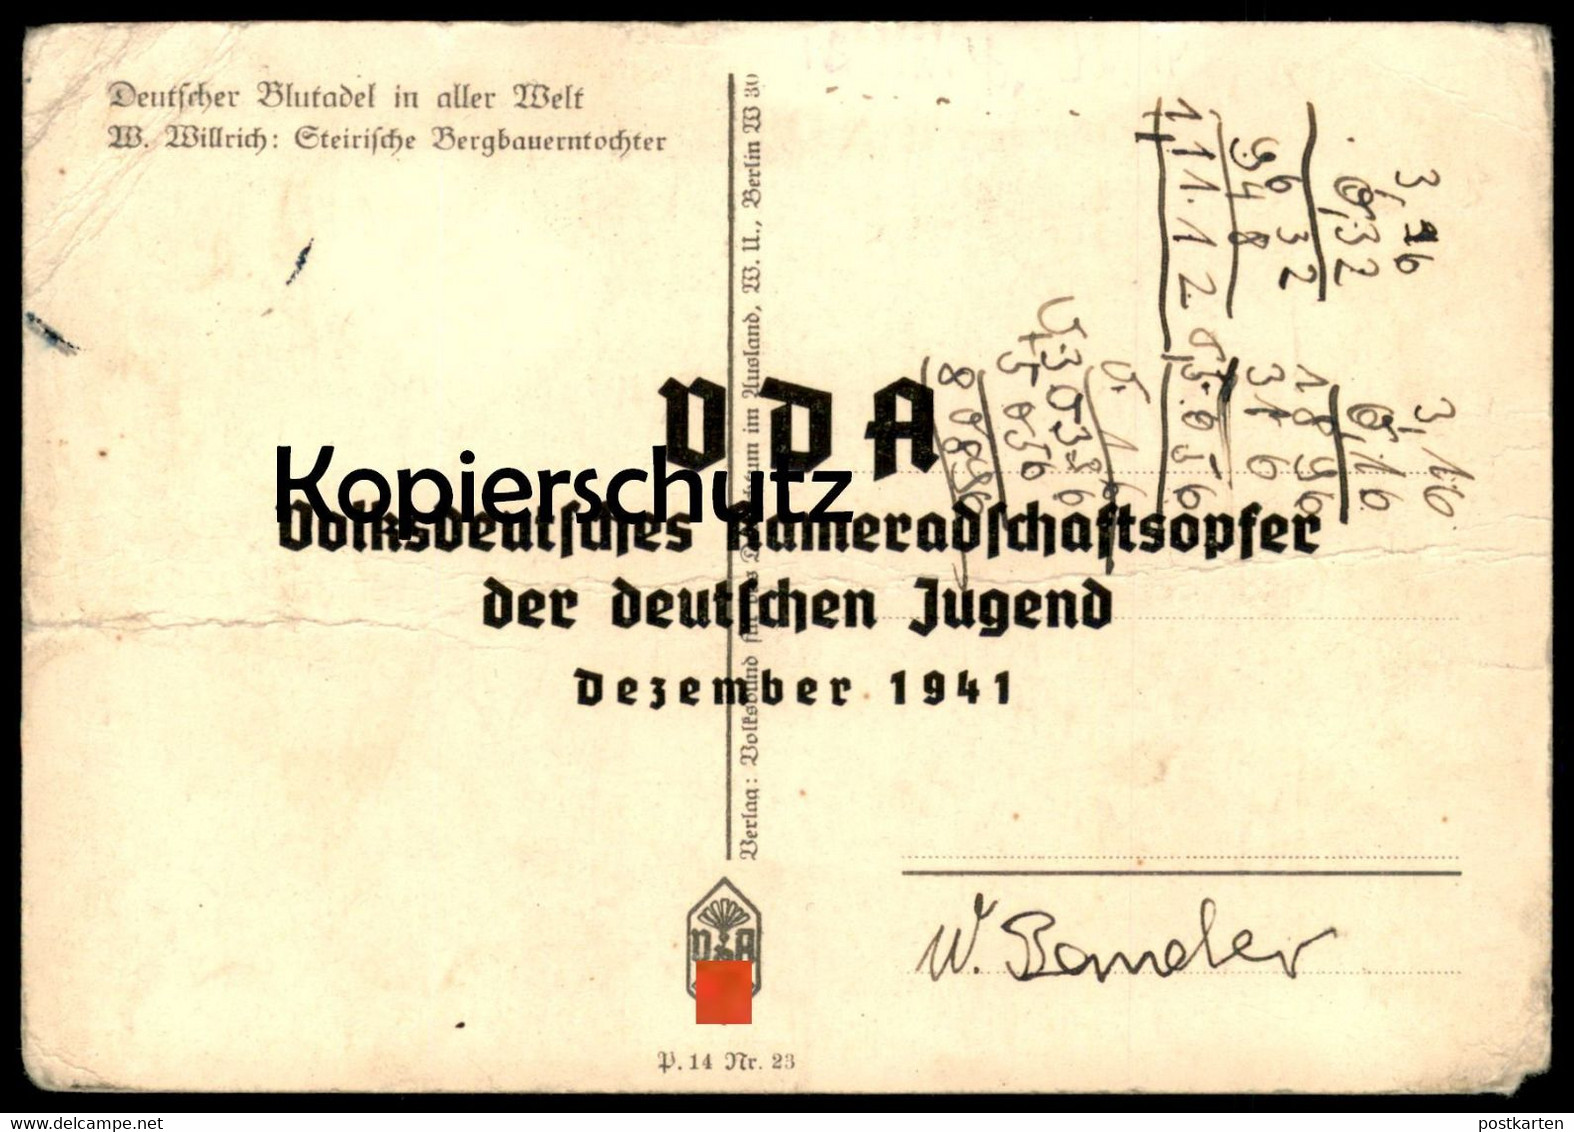 ALTE POSTKARTE W. WILLRICH STEIRISCHE BERGBAUERNTOCHTER Stempel VDA Kameradschaftsopfer Dezember 1941 Postcard AK Cpa - Willrich